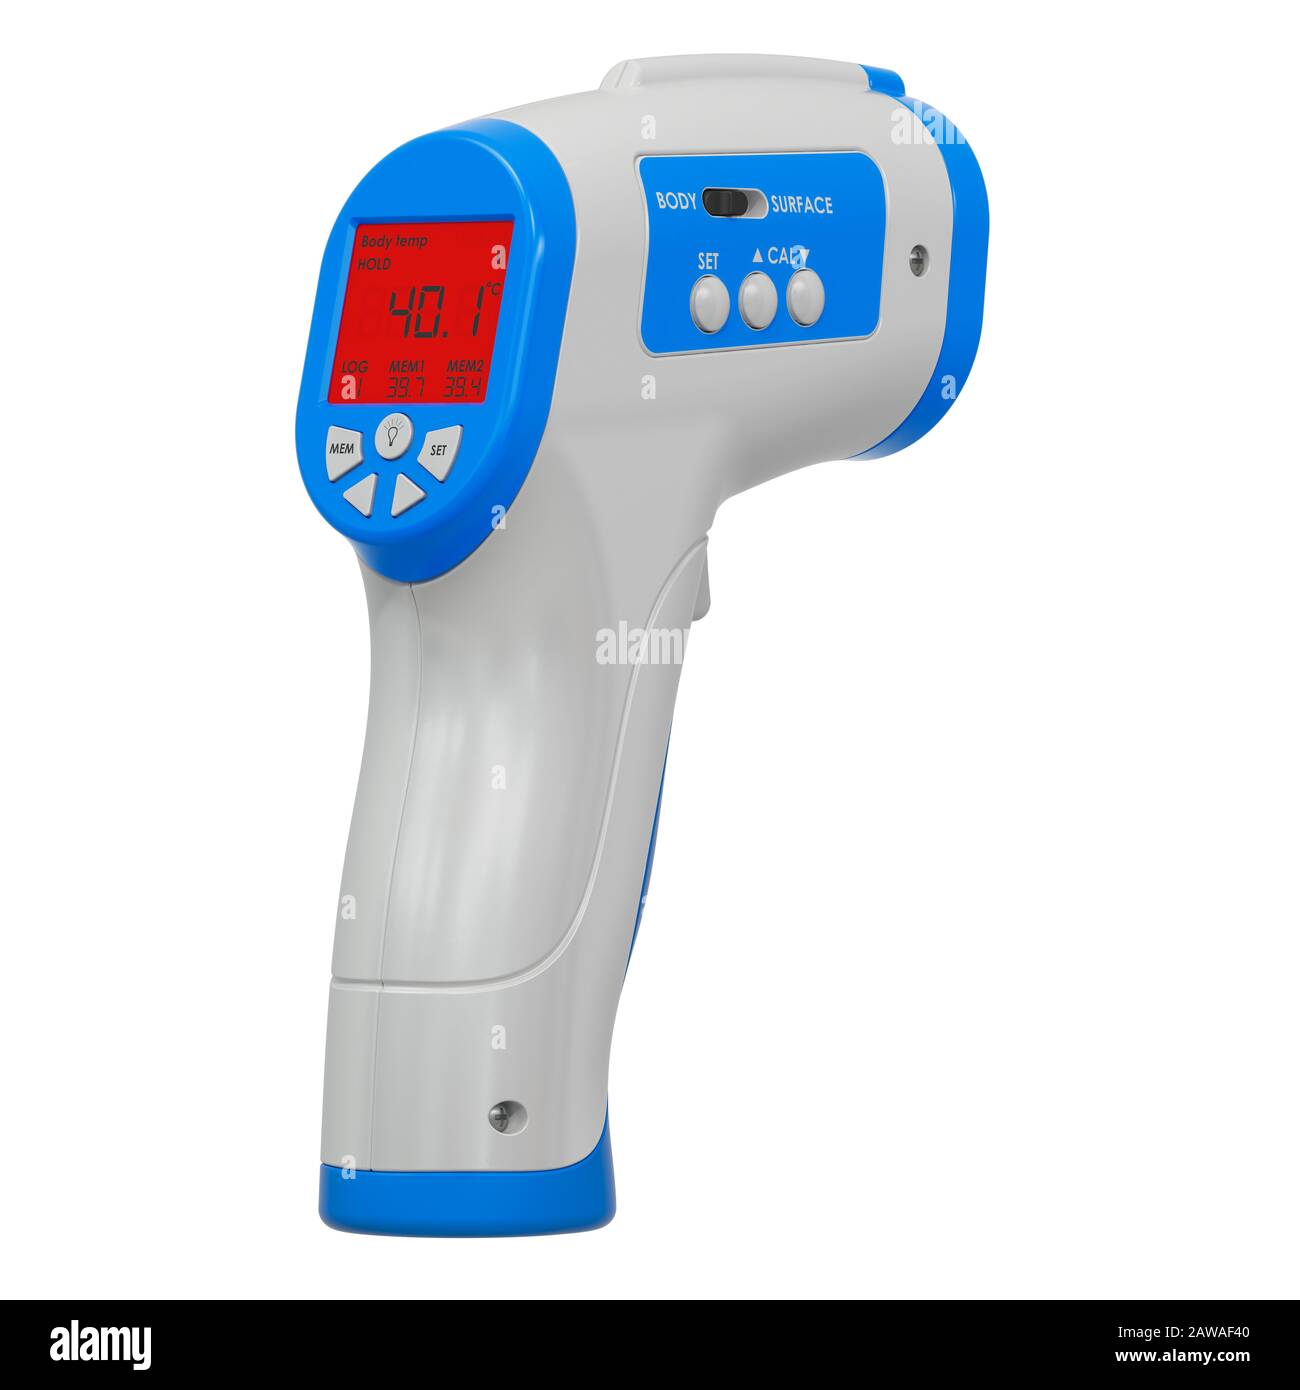 Termometro elettronico a infrarossi LCD con pistola Termica senza contatto, rendering 3D isolato su sfondo bianco Foto Stock